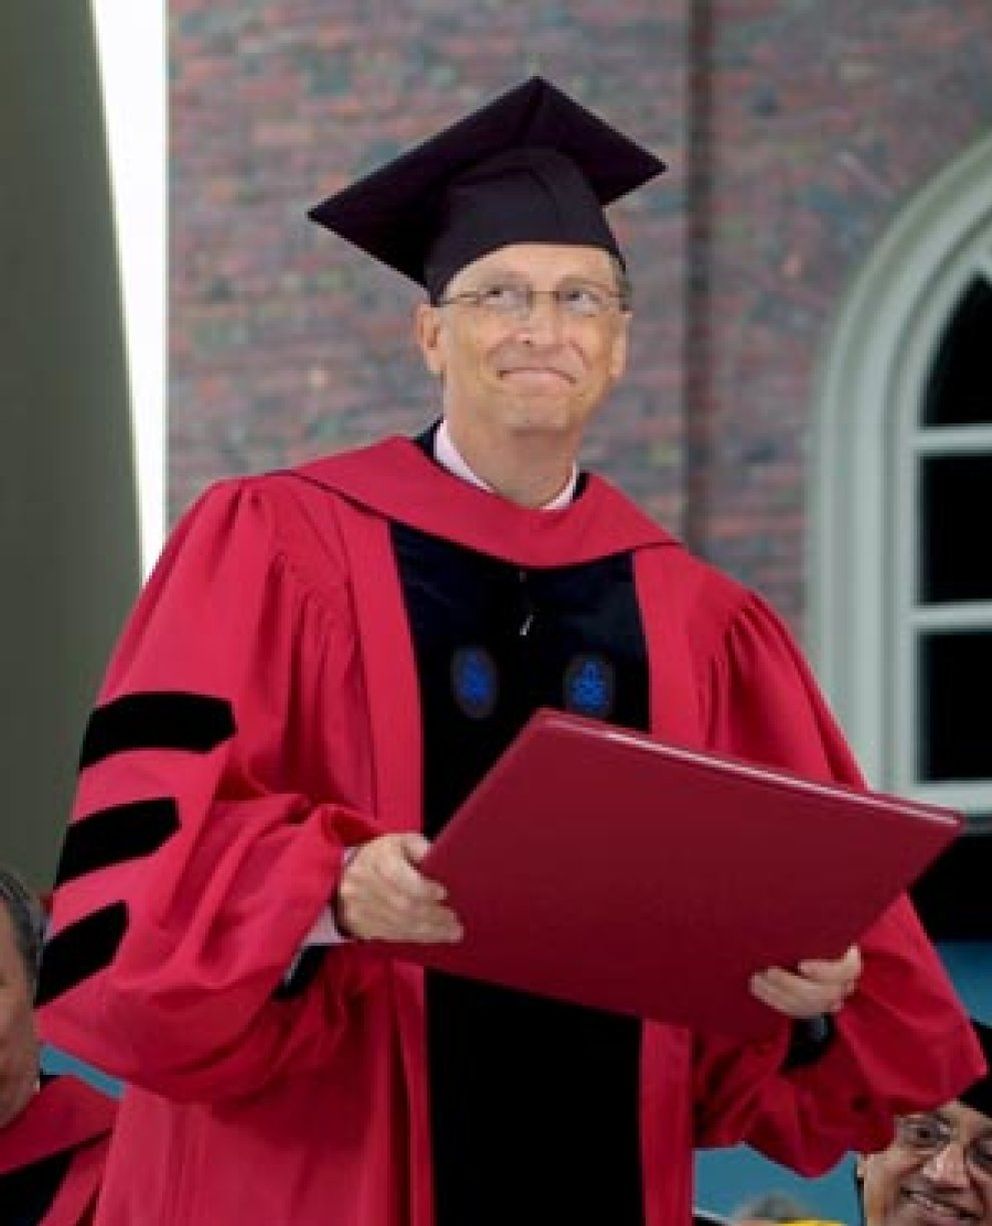 Foto: Bill Gates recibe el título universitario que nunca logró